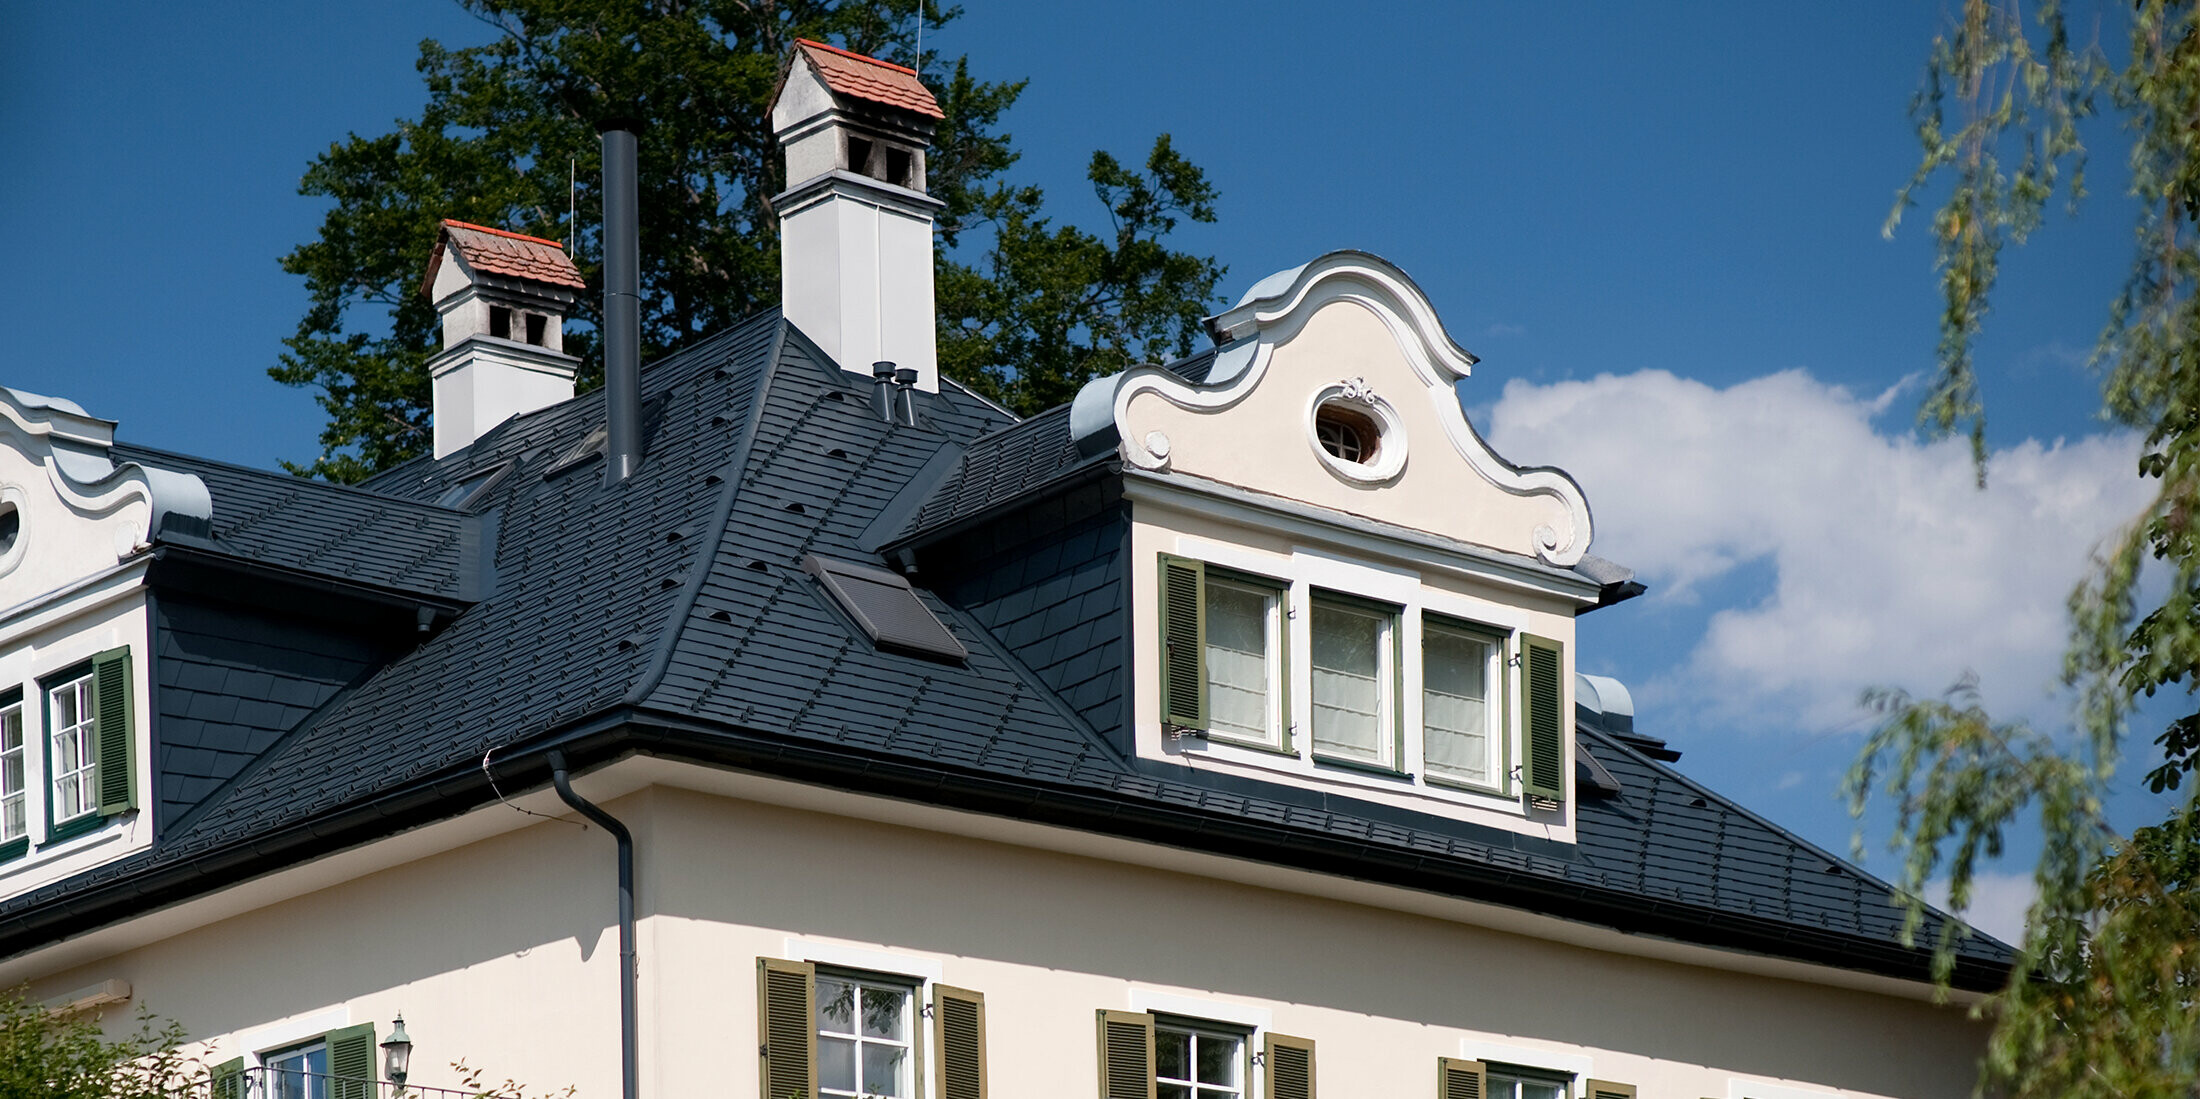 Nahaufnahme des Daches einer Villa in Bad Aussee, Österreich. Das Dach der Villa mit den prunkvollen Gauben wurde mit vielseitigen PREFA Dachschindeln in der Farbe P.10 Anthrazit eingedeckt.